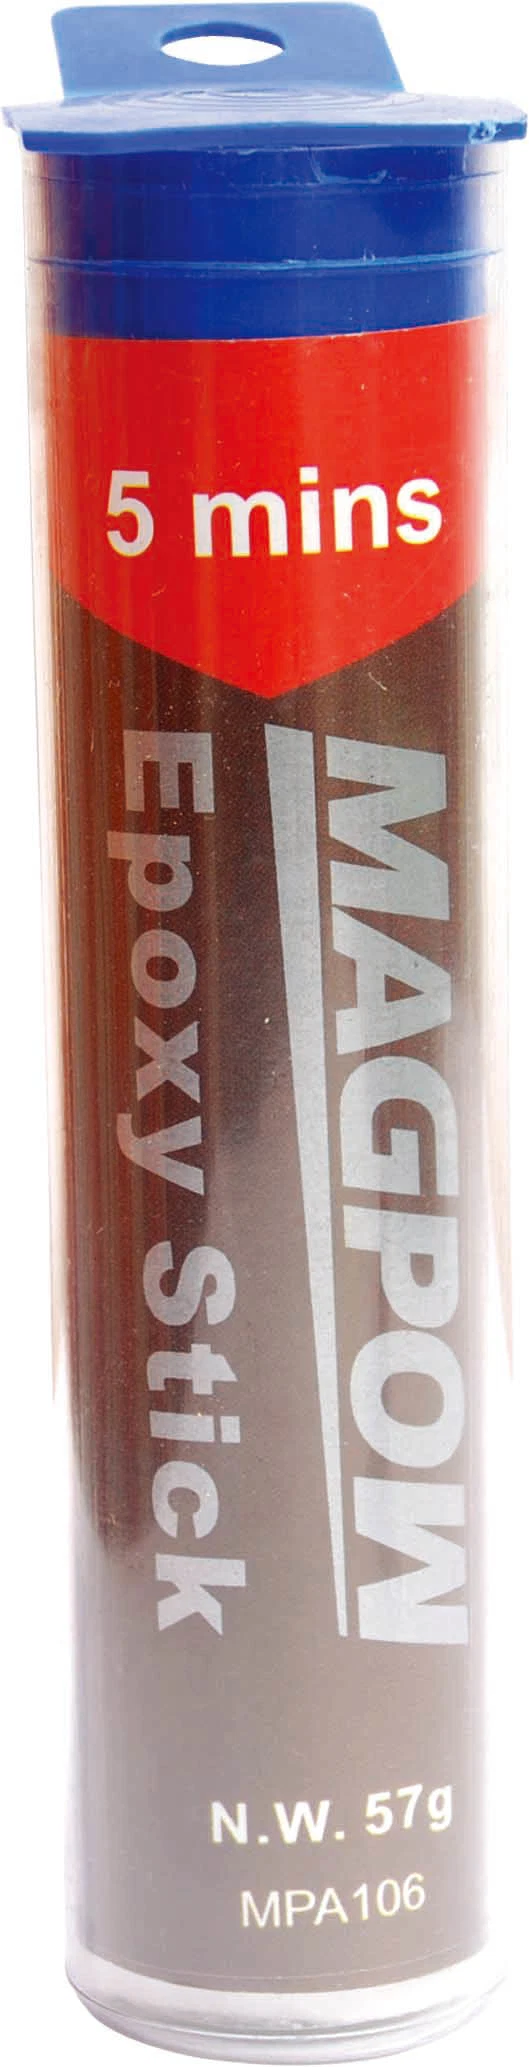 Magpow Epoxy pegamento adhesivo profesional excelente económico Epoxy